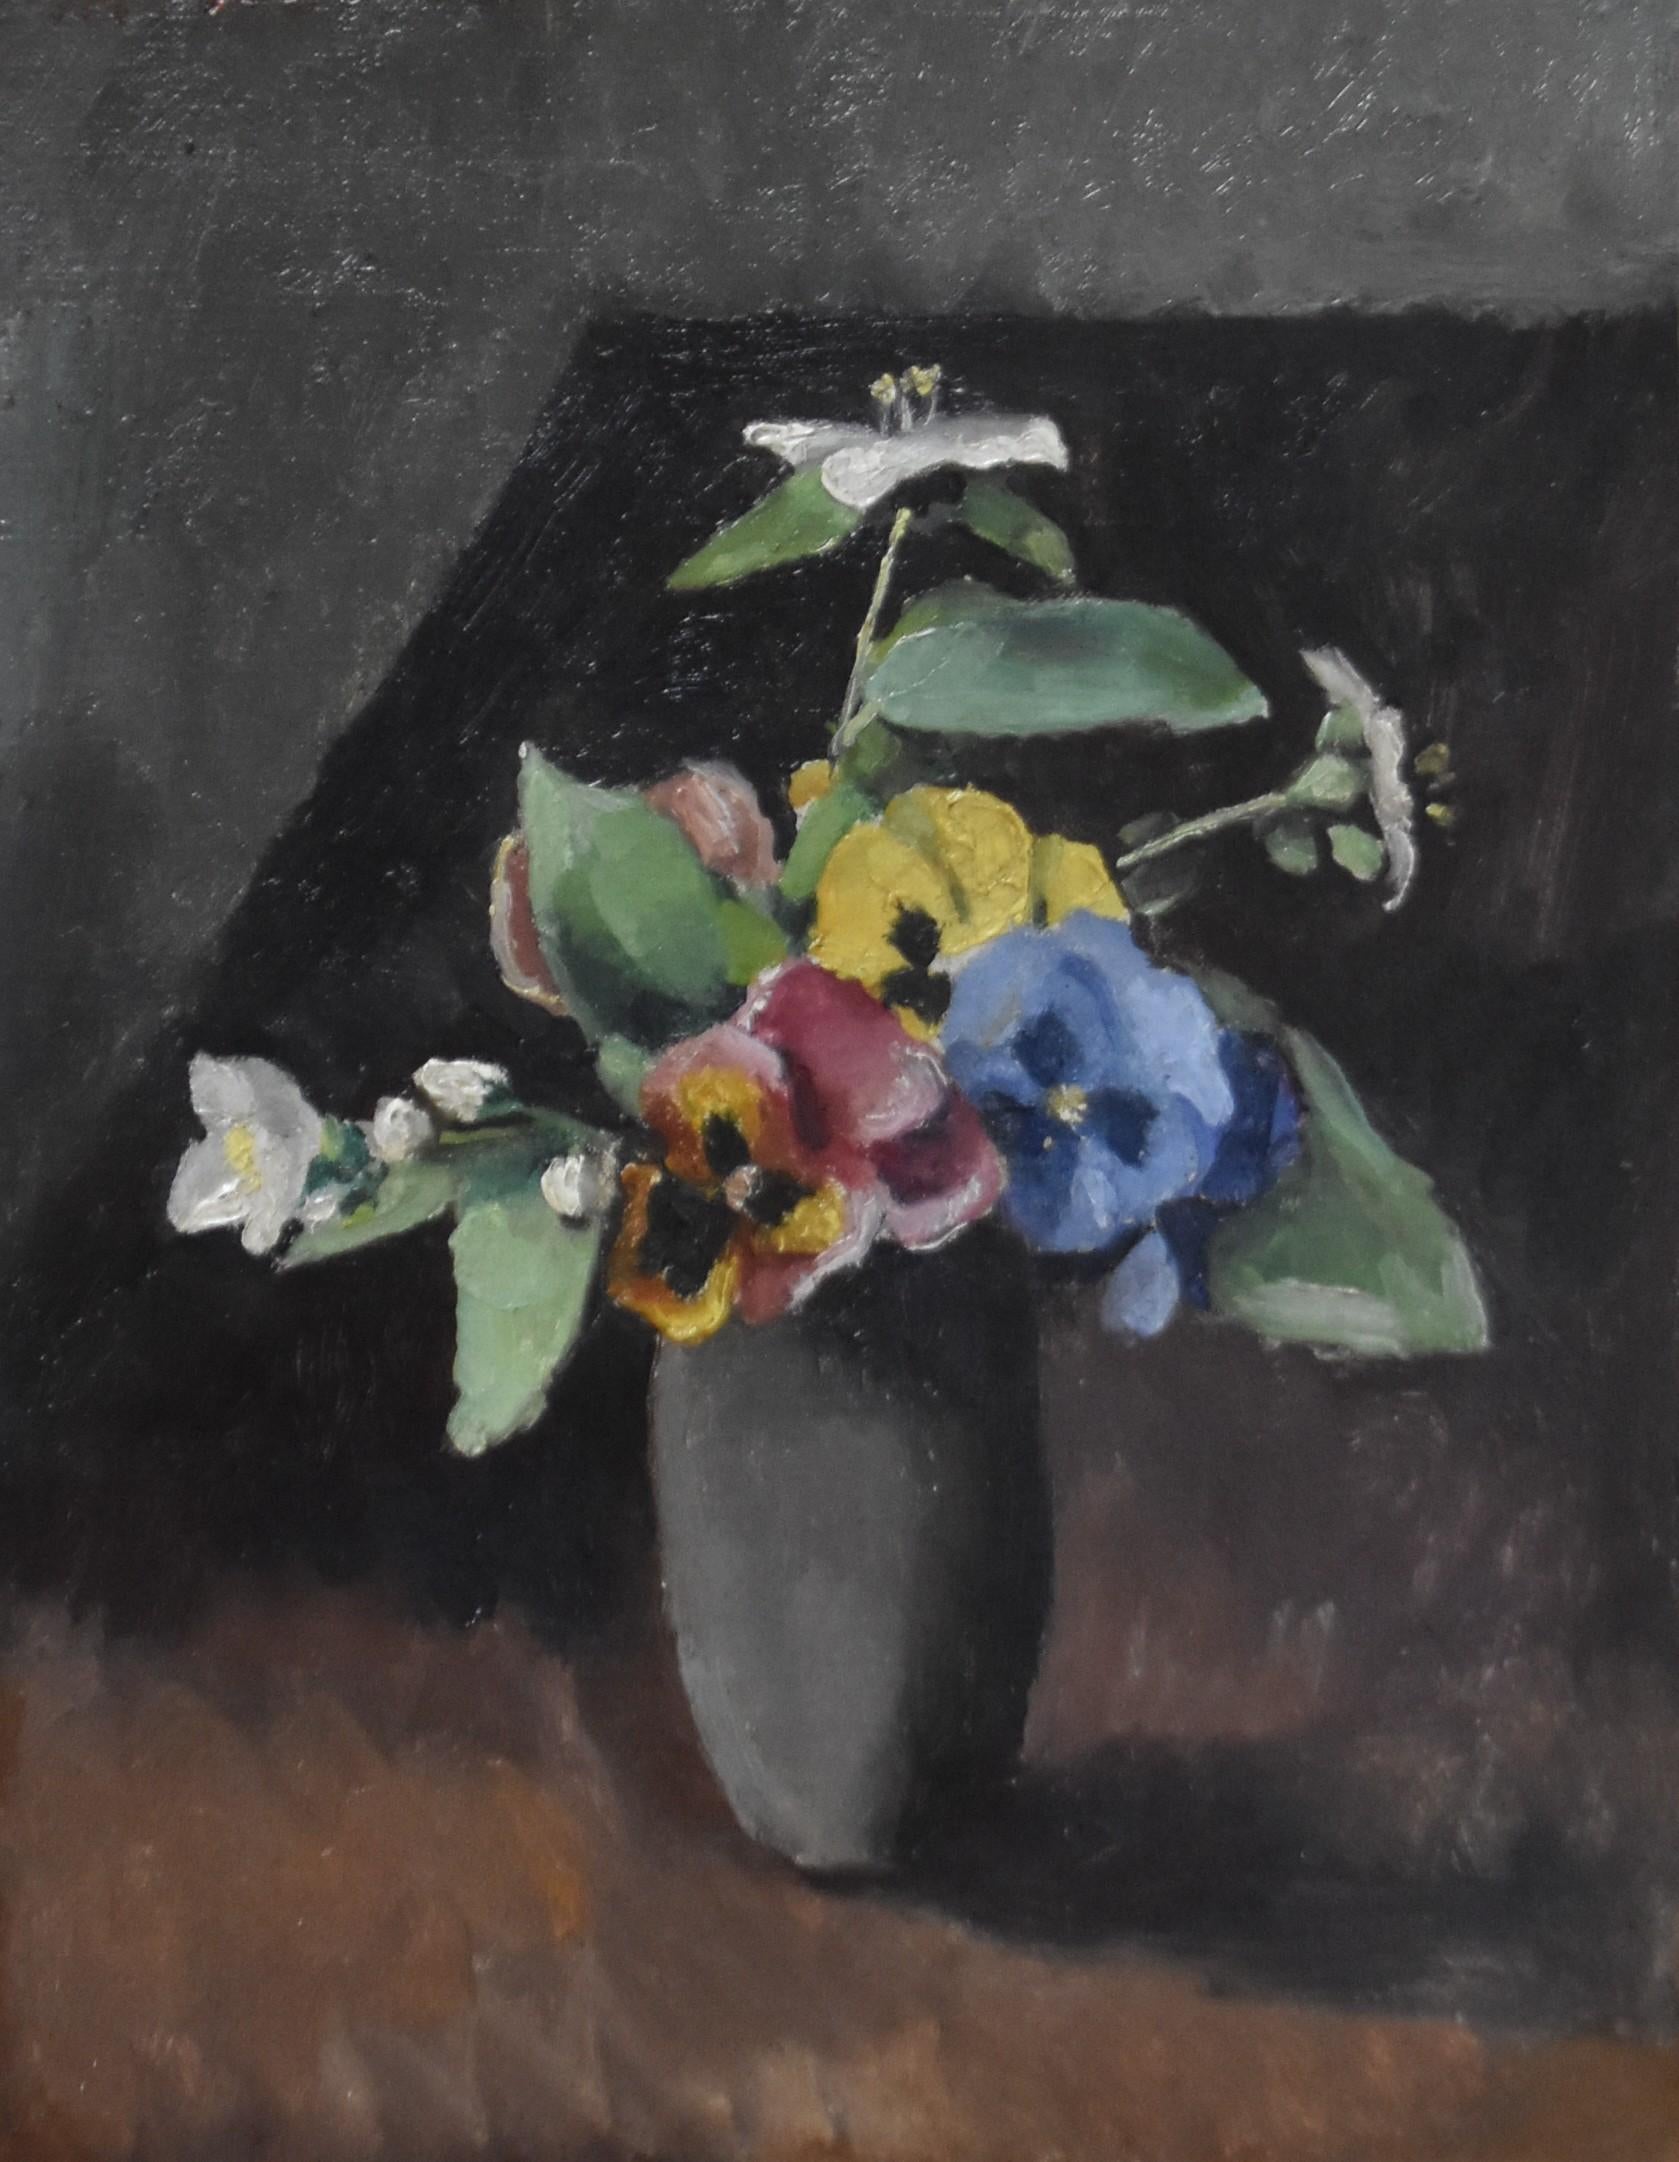 Maurice Asselin (1882-1947) 
Ein Blumenstrauß in einer Vase
Signiert oben links,  nummeriert und datiert 1942 auf der Rückseite
Öl auf Leinwand
35 x 27 cm
In gutem Zustand
In einem modernen Rahmen  : 46,5 x 38,5 cm


Maurice Asselin ist ein Maler